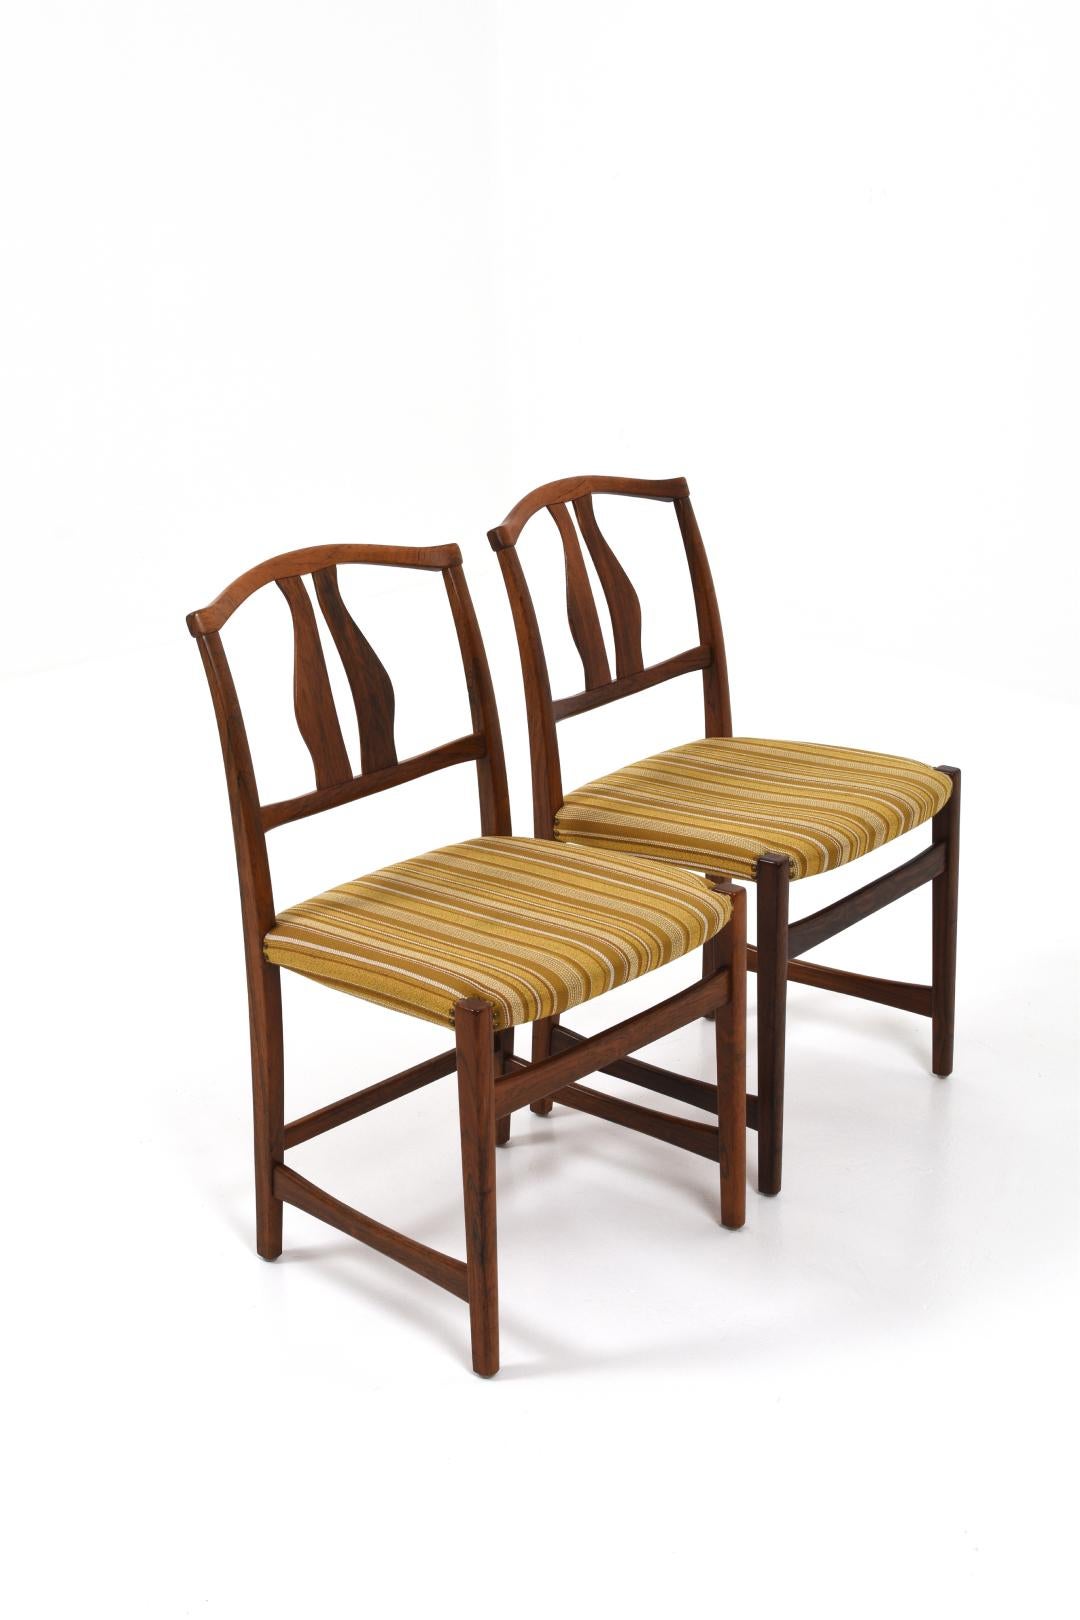 La chaise de Vidar est une chaise emblématique créée par Vidar Malmsten, le fils de Carl Malmsten, dans les années 1970. Largement utilisé aux États-Unis et au Canada dans les programmes de formation des fabricants de meubles de studio.